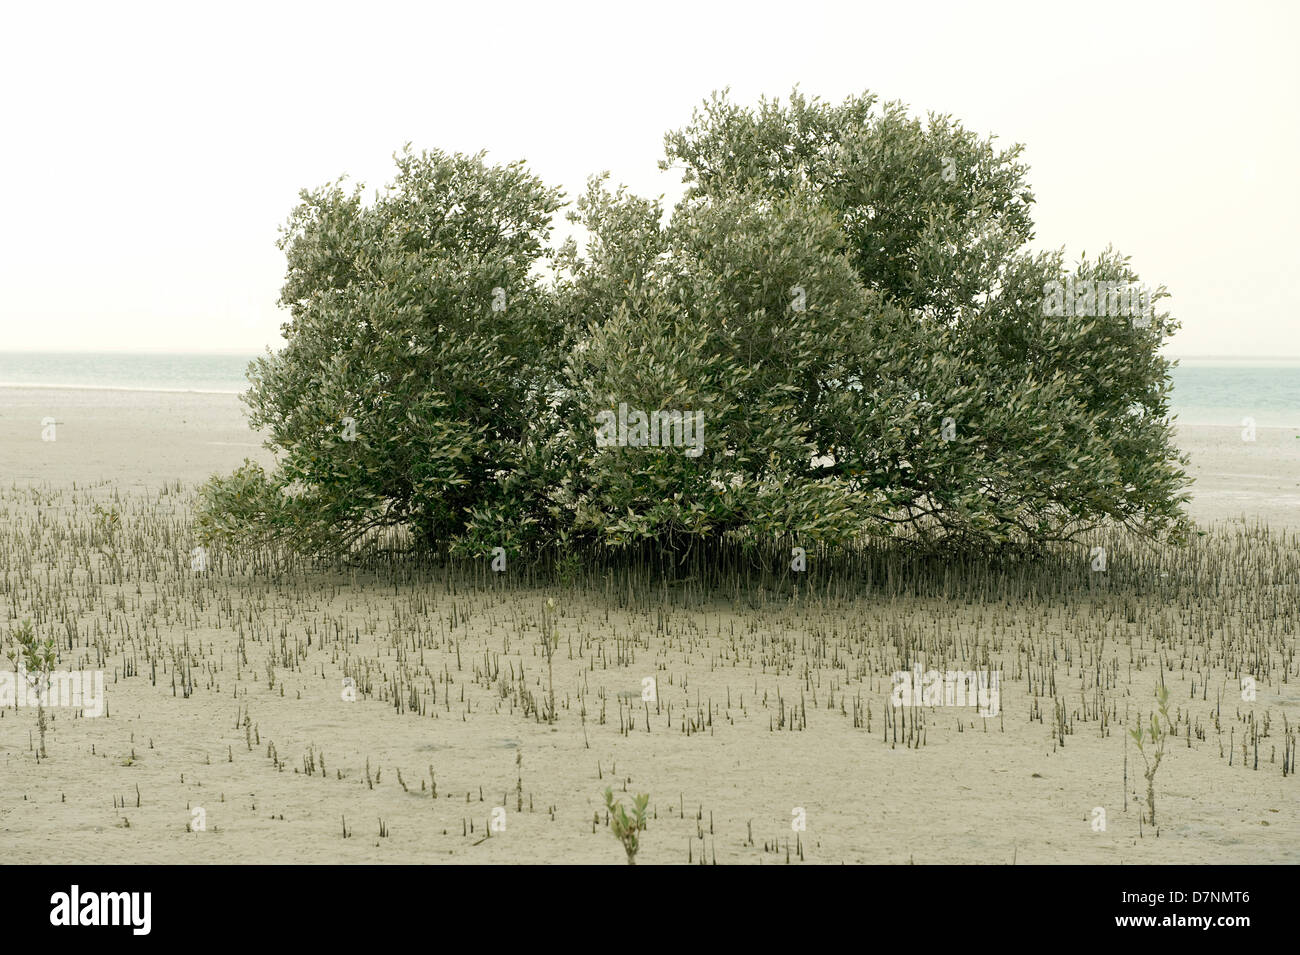 Eine Reife graue Mangrove, Avicennia Marina Baum bei Ebbe mit Luftwurzeln oder Stelzwurzeln ragte über dem sand Stockfoto